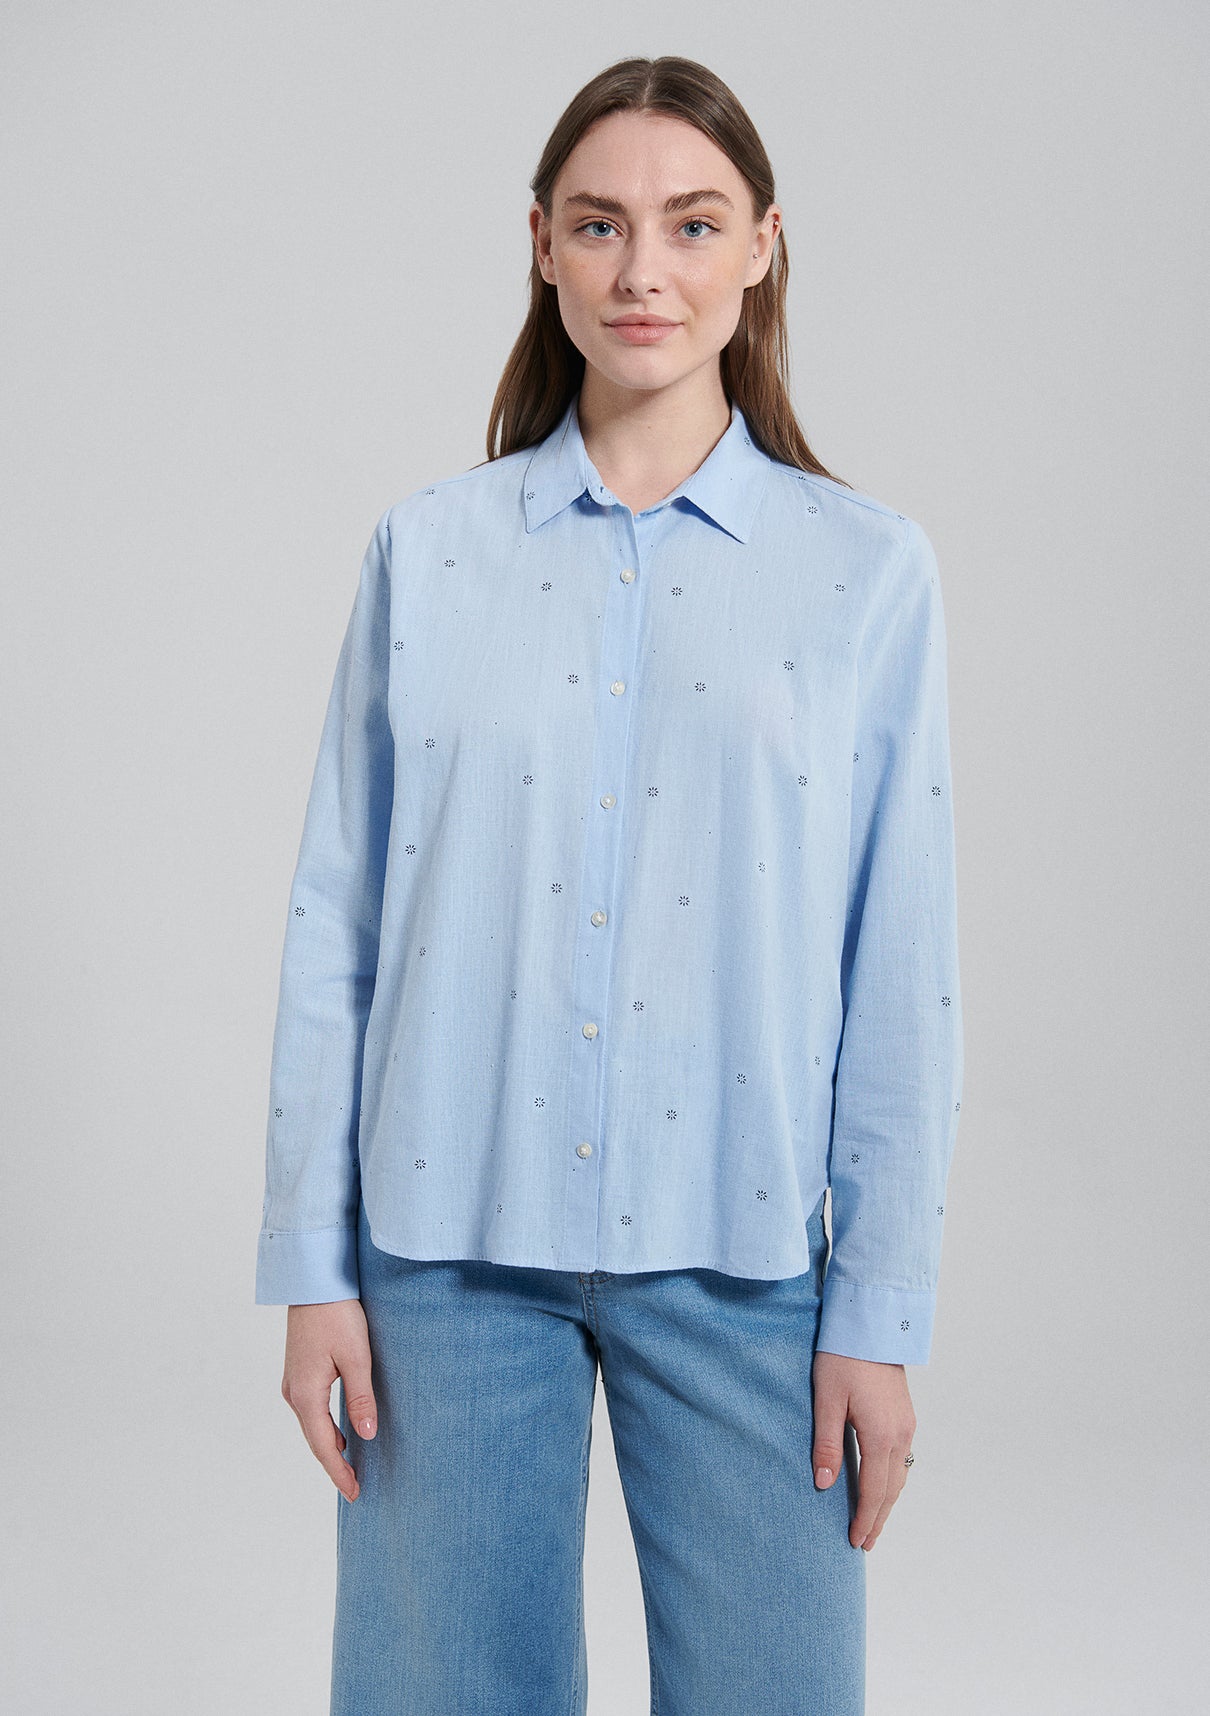 Long Sleeve Shirt in Navy Flower Dot Print Hemden Mavi   